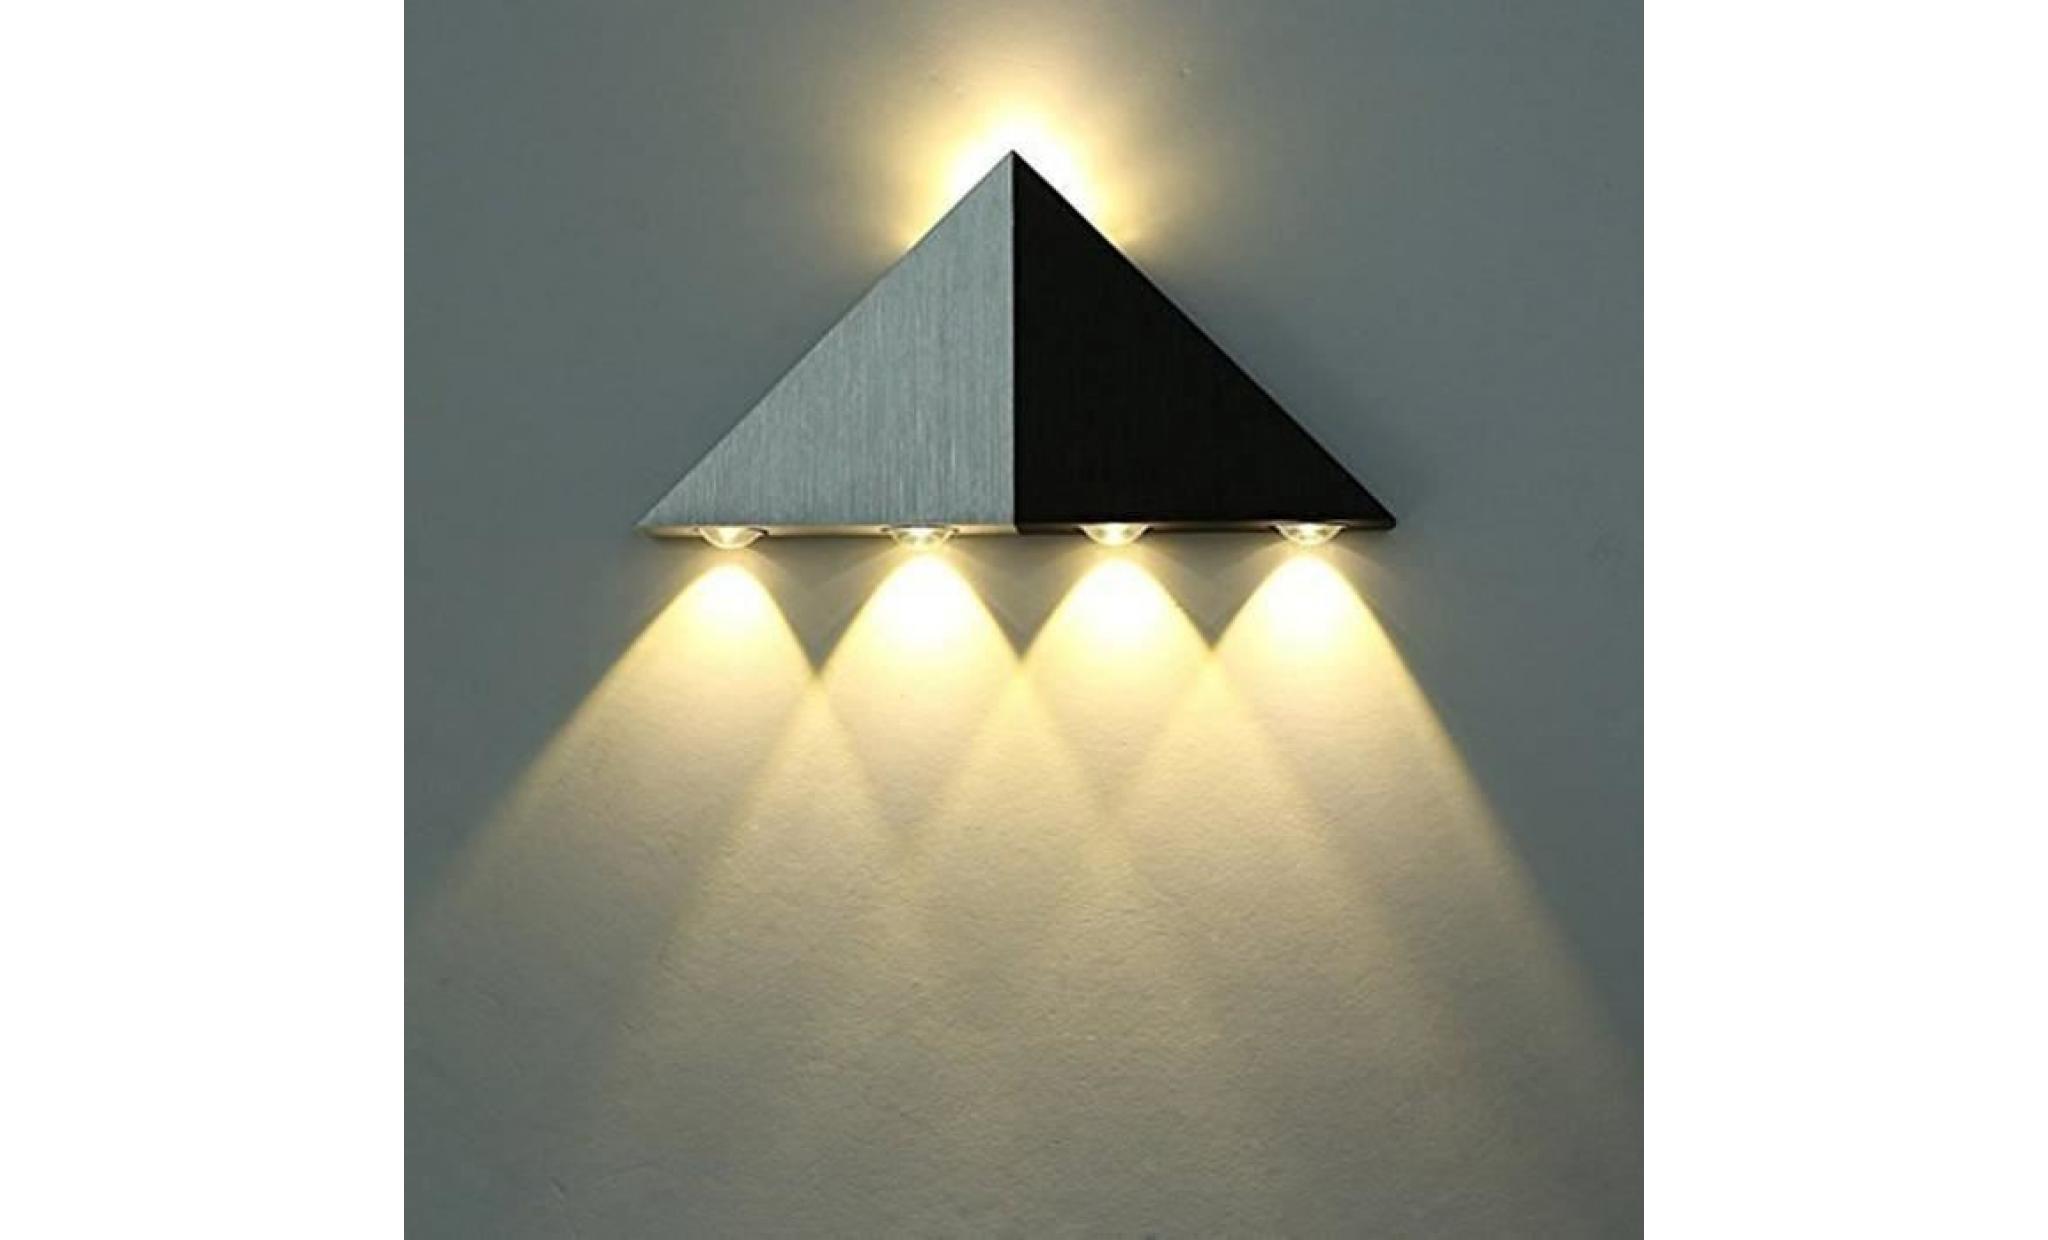 lightess applique murale 5w led triangle lampe design moderne eclairage décoratif en aluminium lampe murale pour chambre couloir